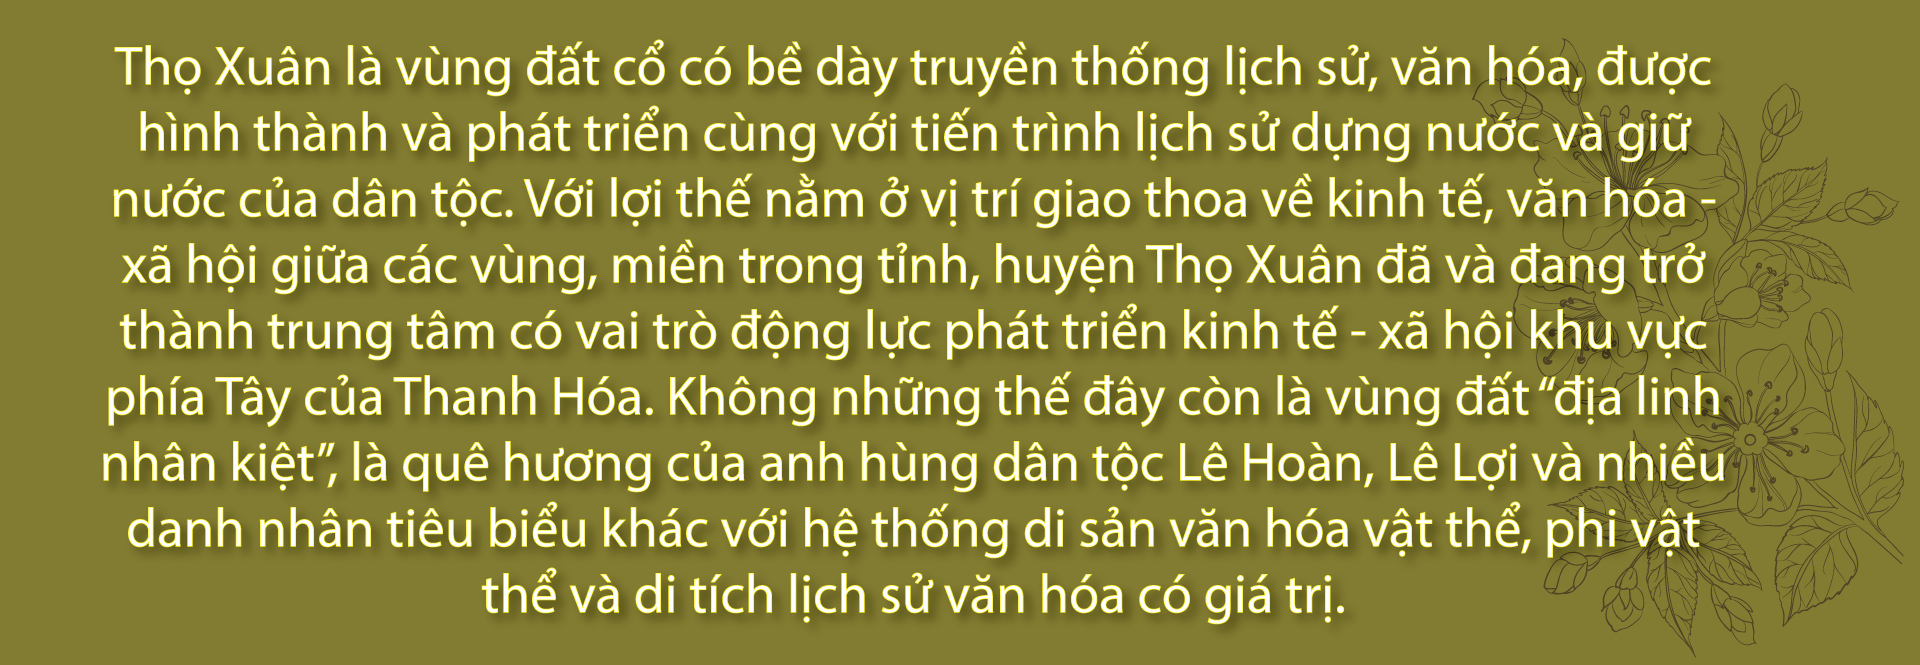 Dấu ấn kinh thành cổ Lam Kinh - Ảnh 2.